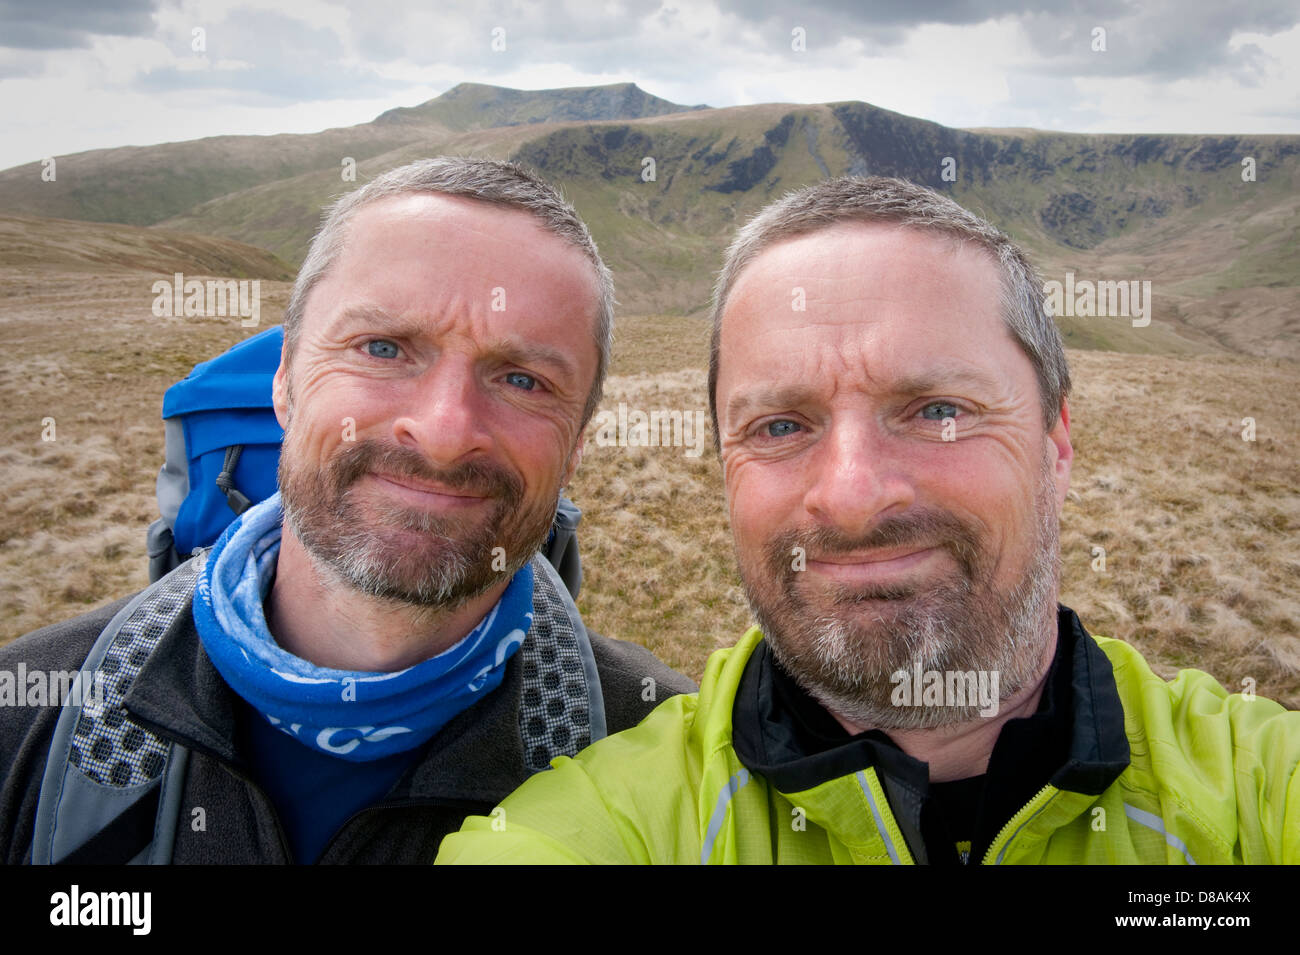 Los gemelos idénticos en la parte superior del Sur cayeron en el Lake District inglés, durante vacaciones caminando en el distrito inglés de Lake District. Foto de stock